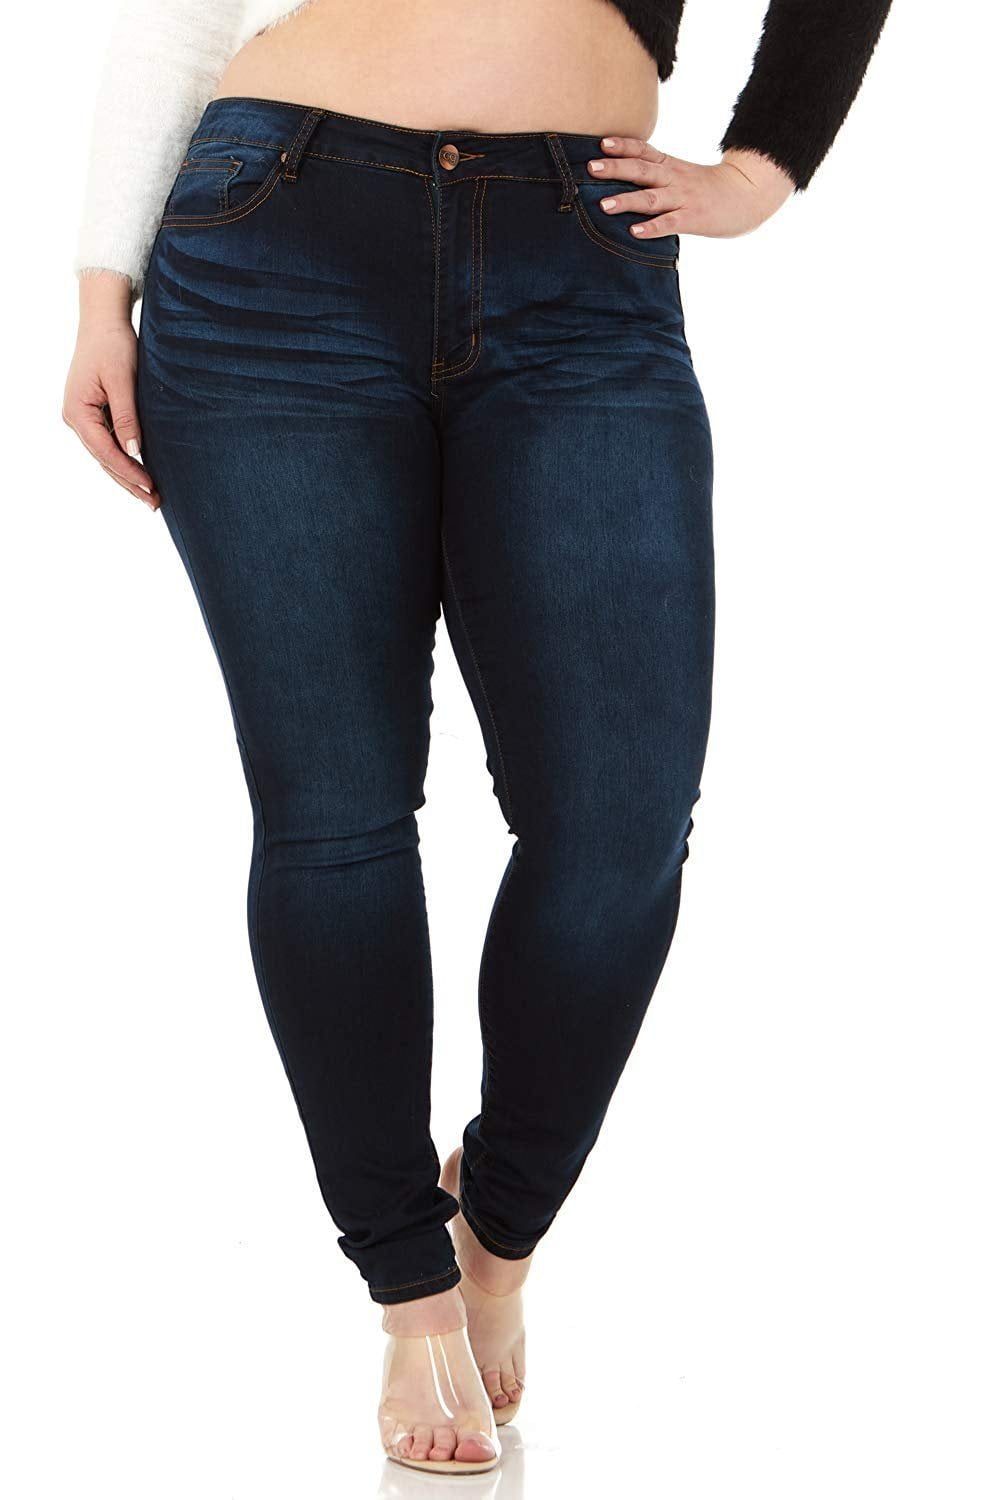 Smart Jeans Cute Fits Women and TeensJuniors Plus Size Mid Rise Skinny Denim 